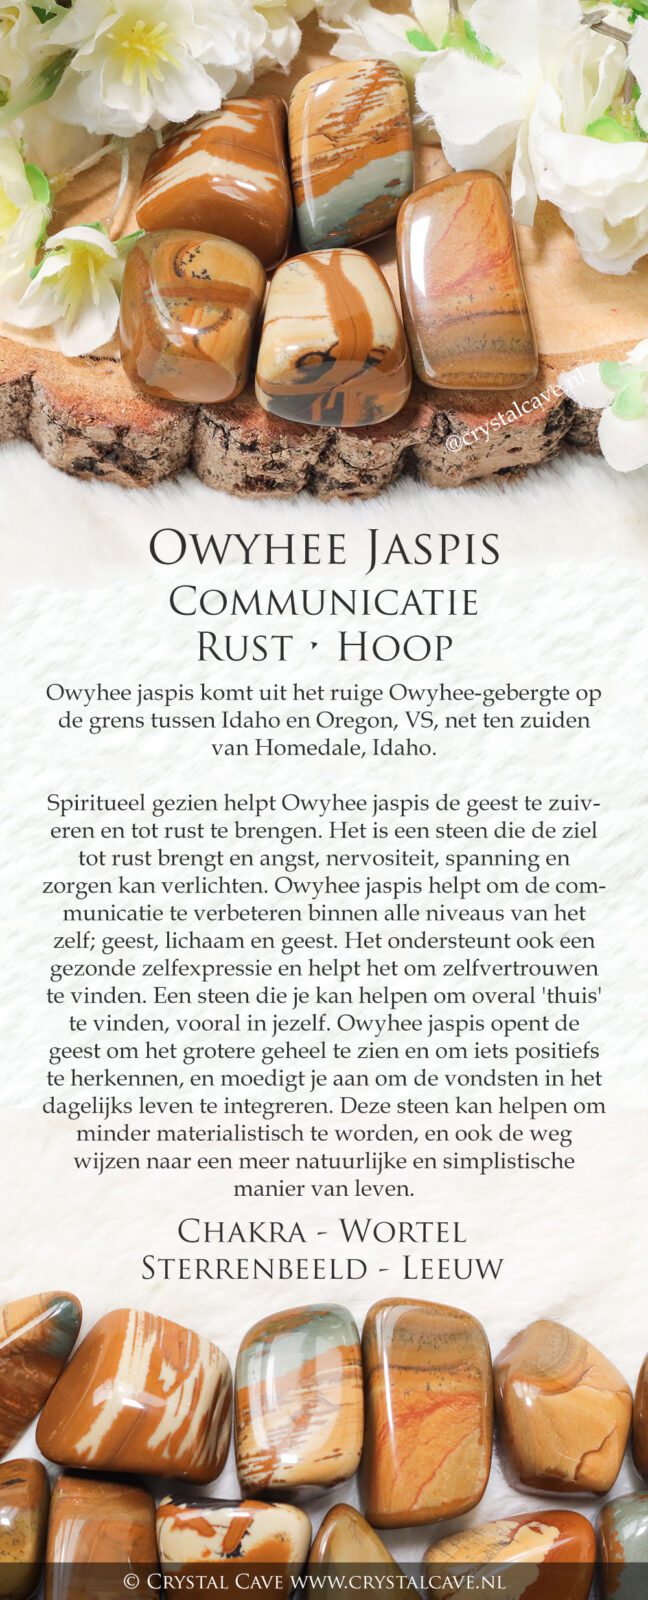 Owyhee jaspis betekenis - Crystal Cave